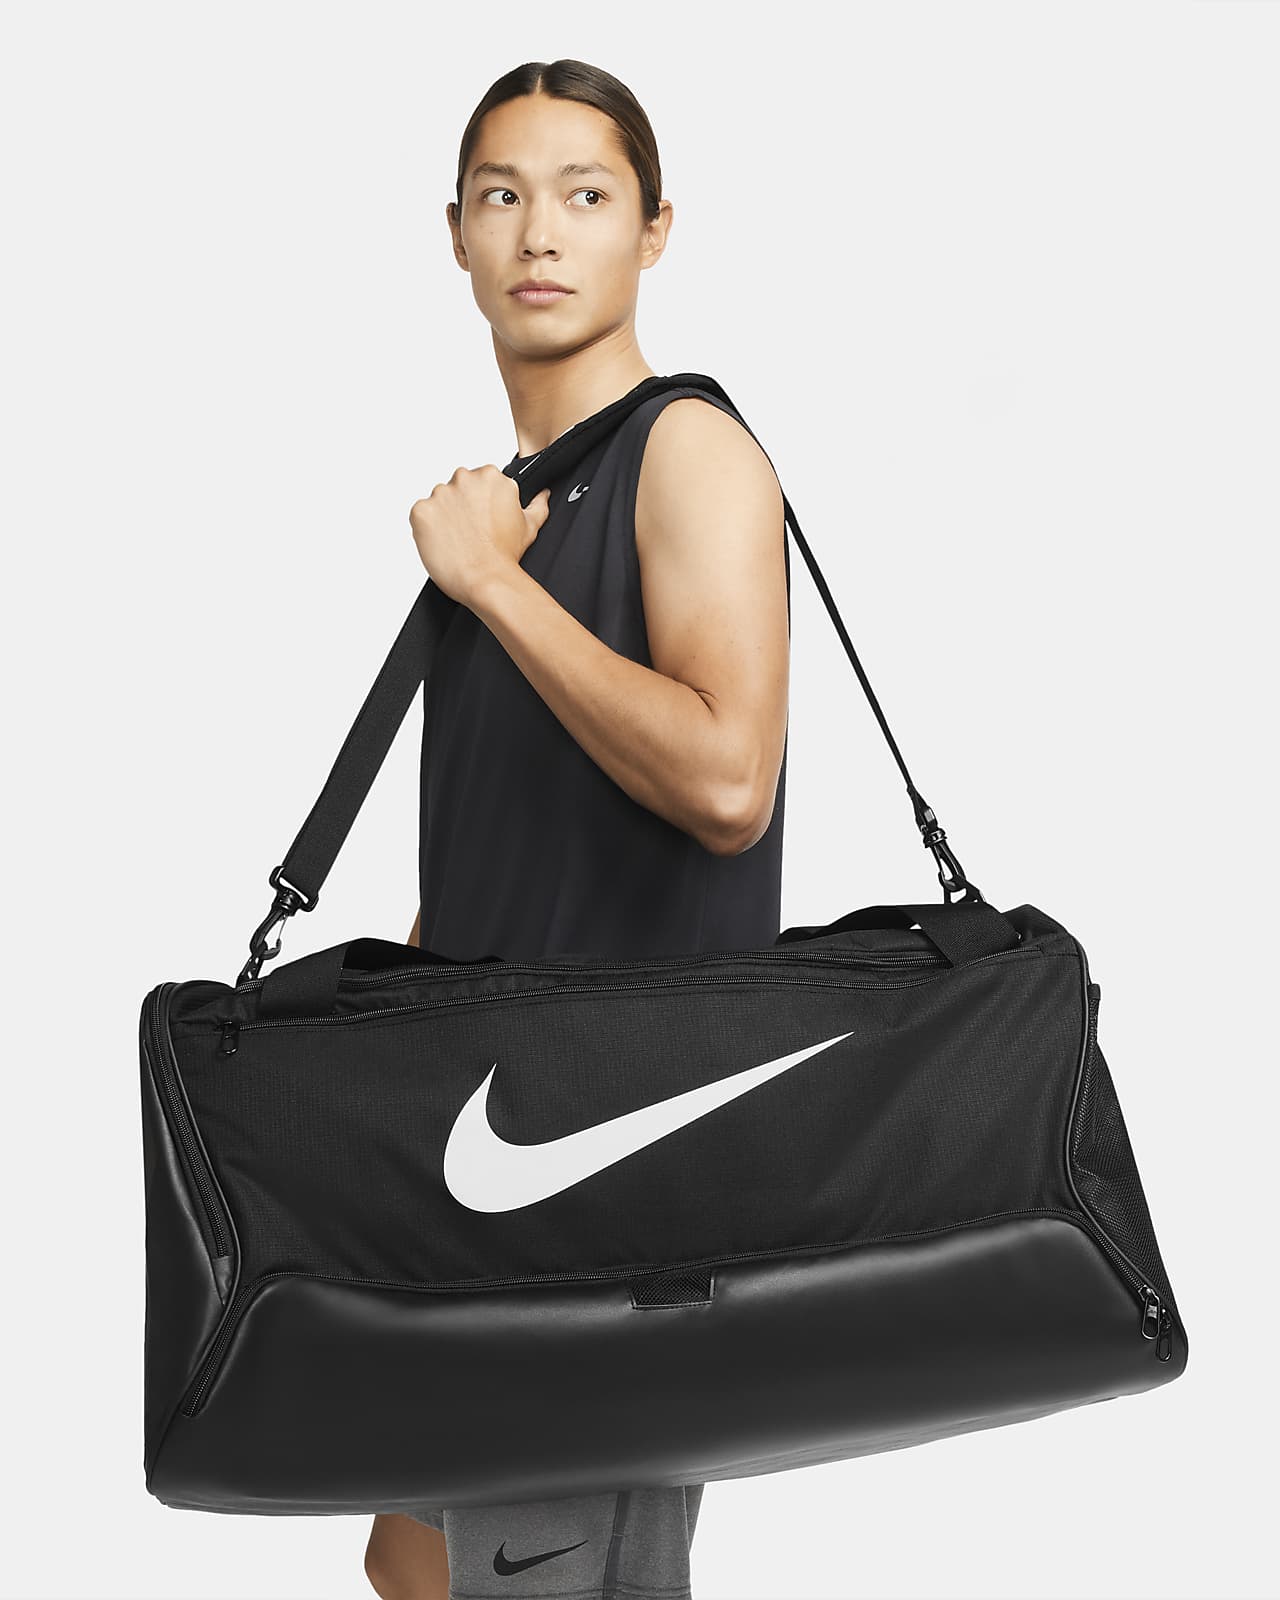 Tréninková sportovní taška Nike Brasilia 9.5 (velká, 95 l)